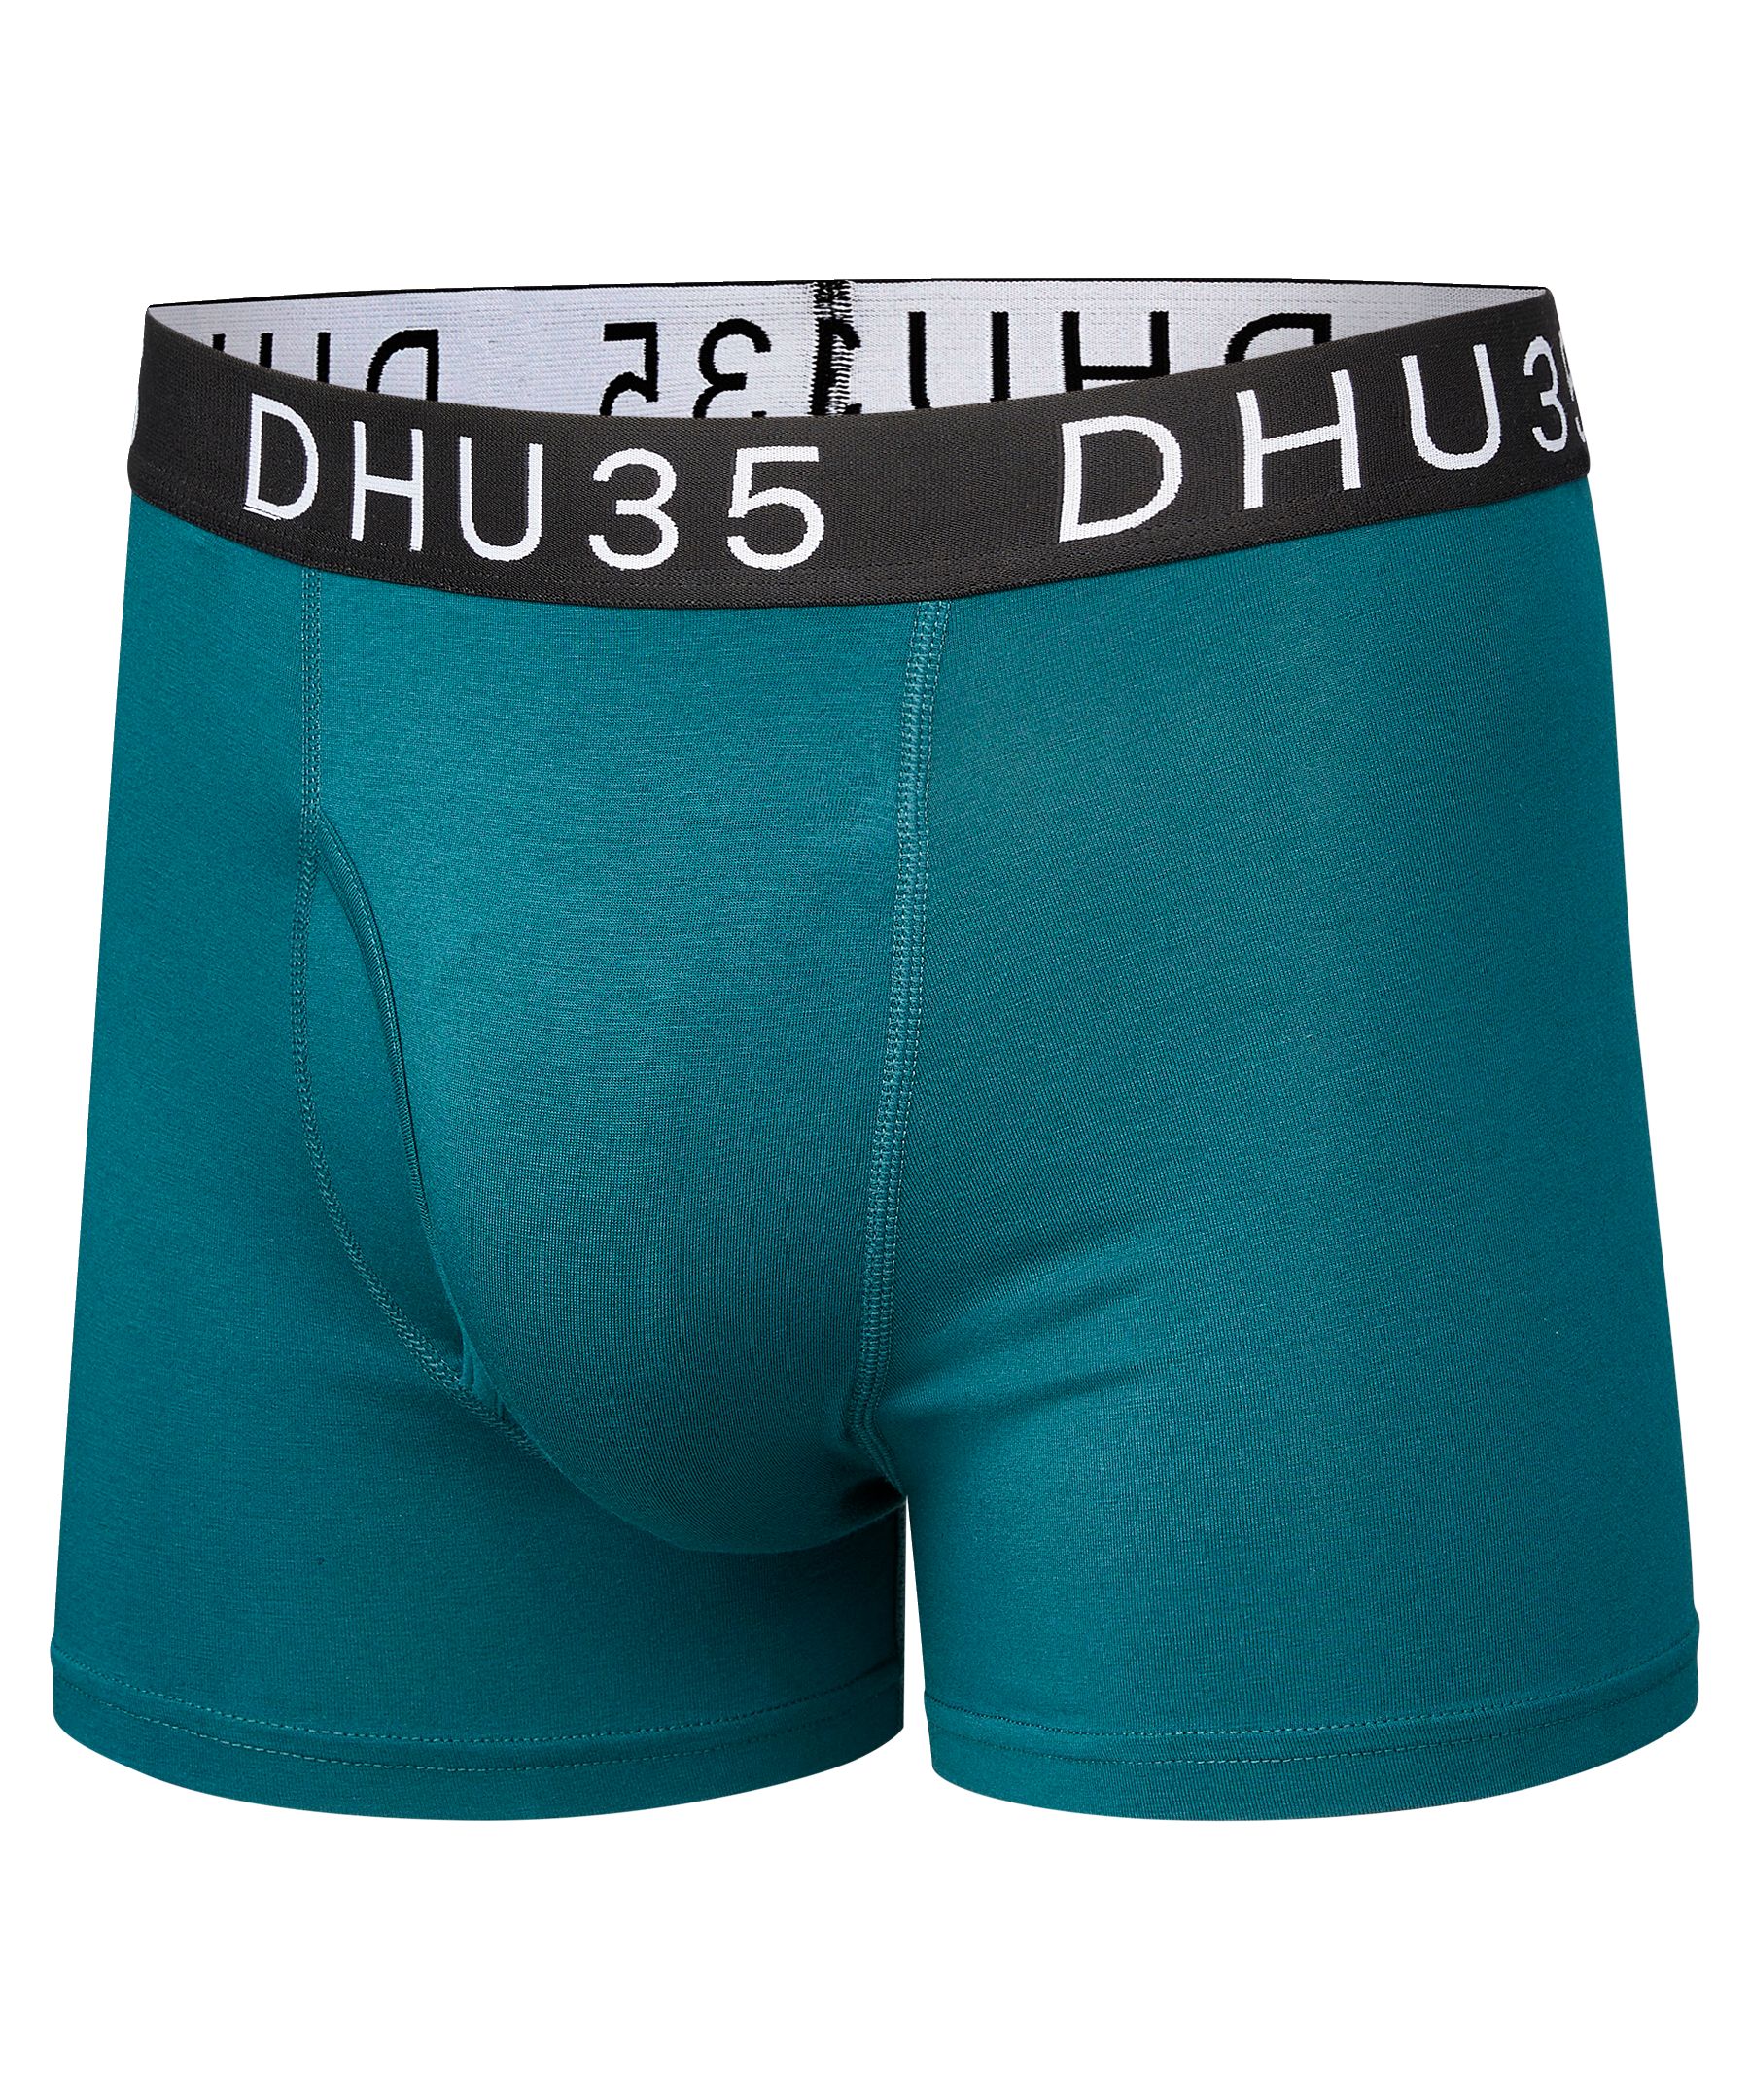 New - Denver Hayes Hi Cut Briefs Underwear 5 Pack